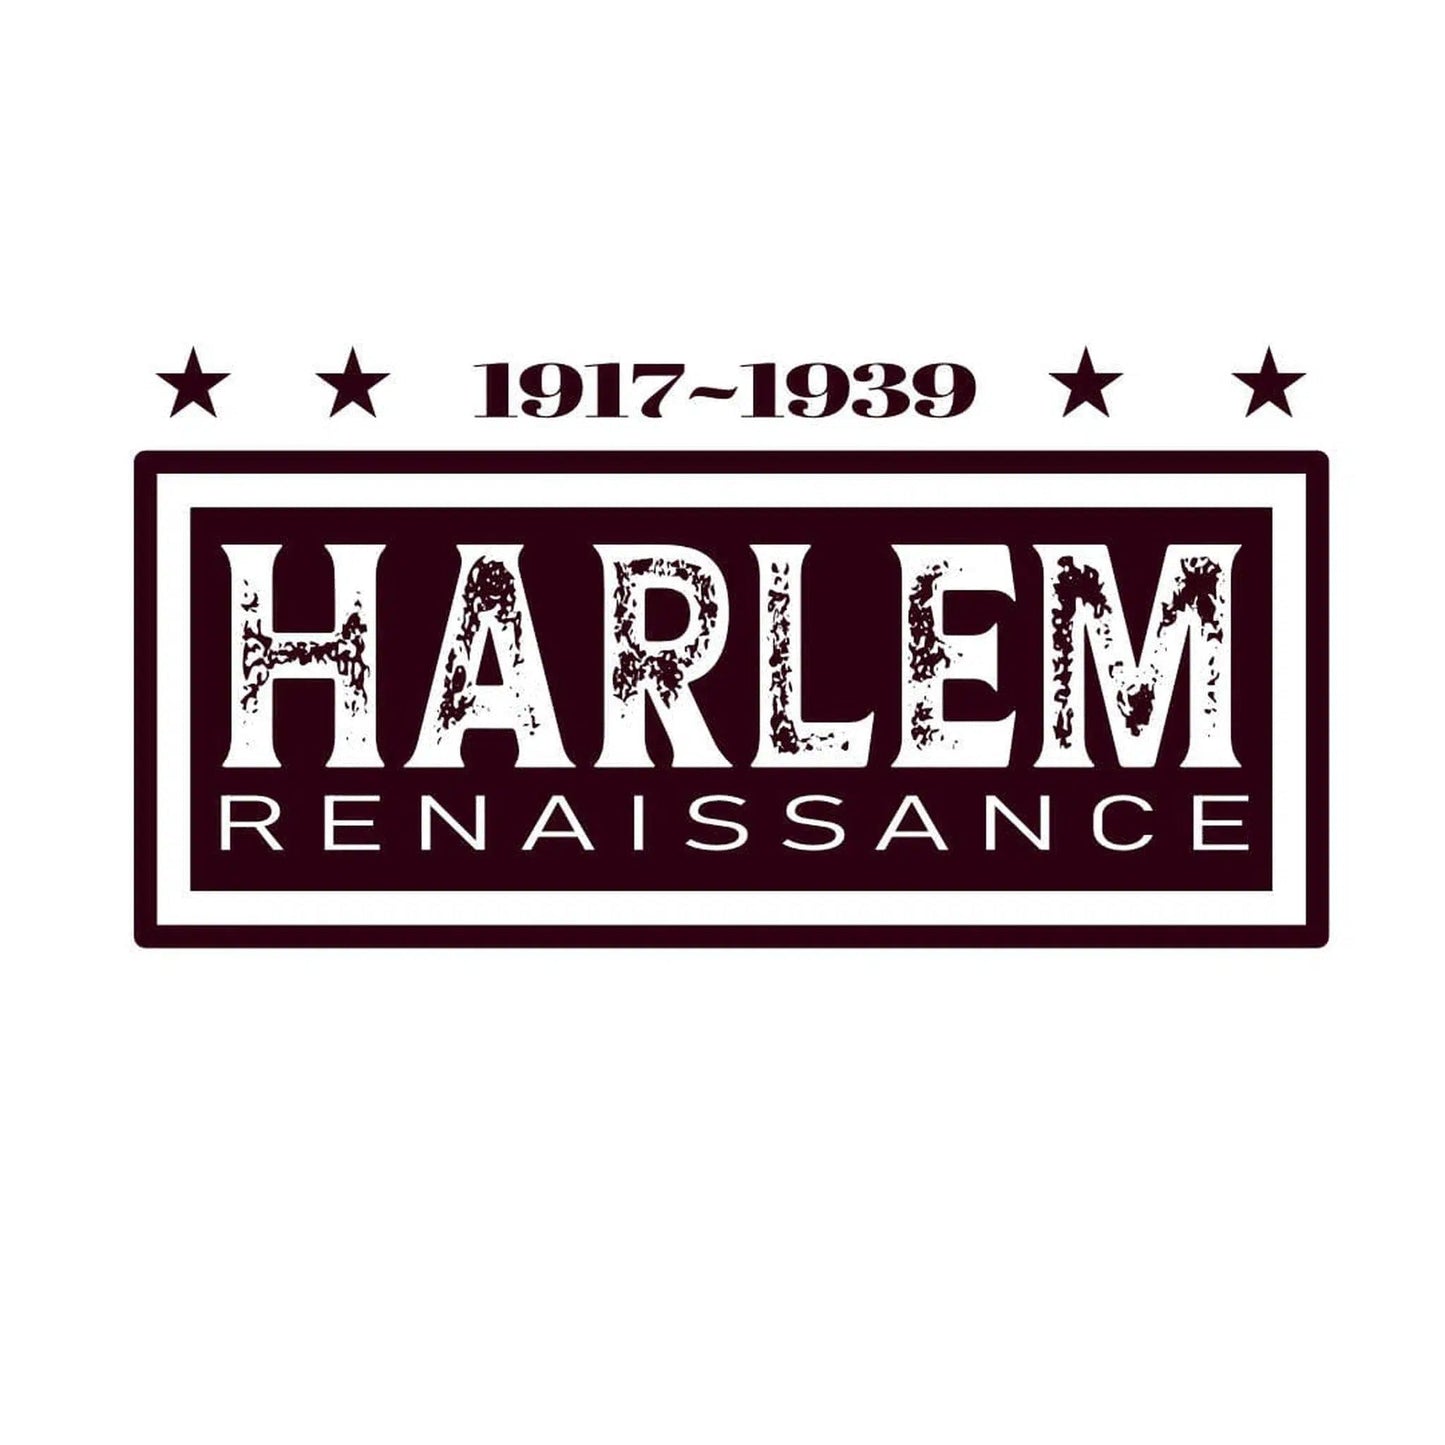 Harlem T shirt The Renaissance